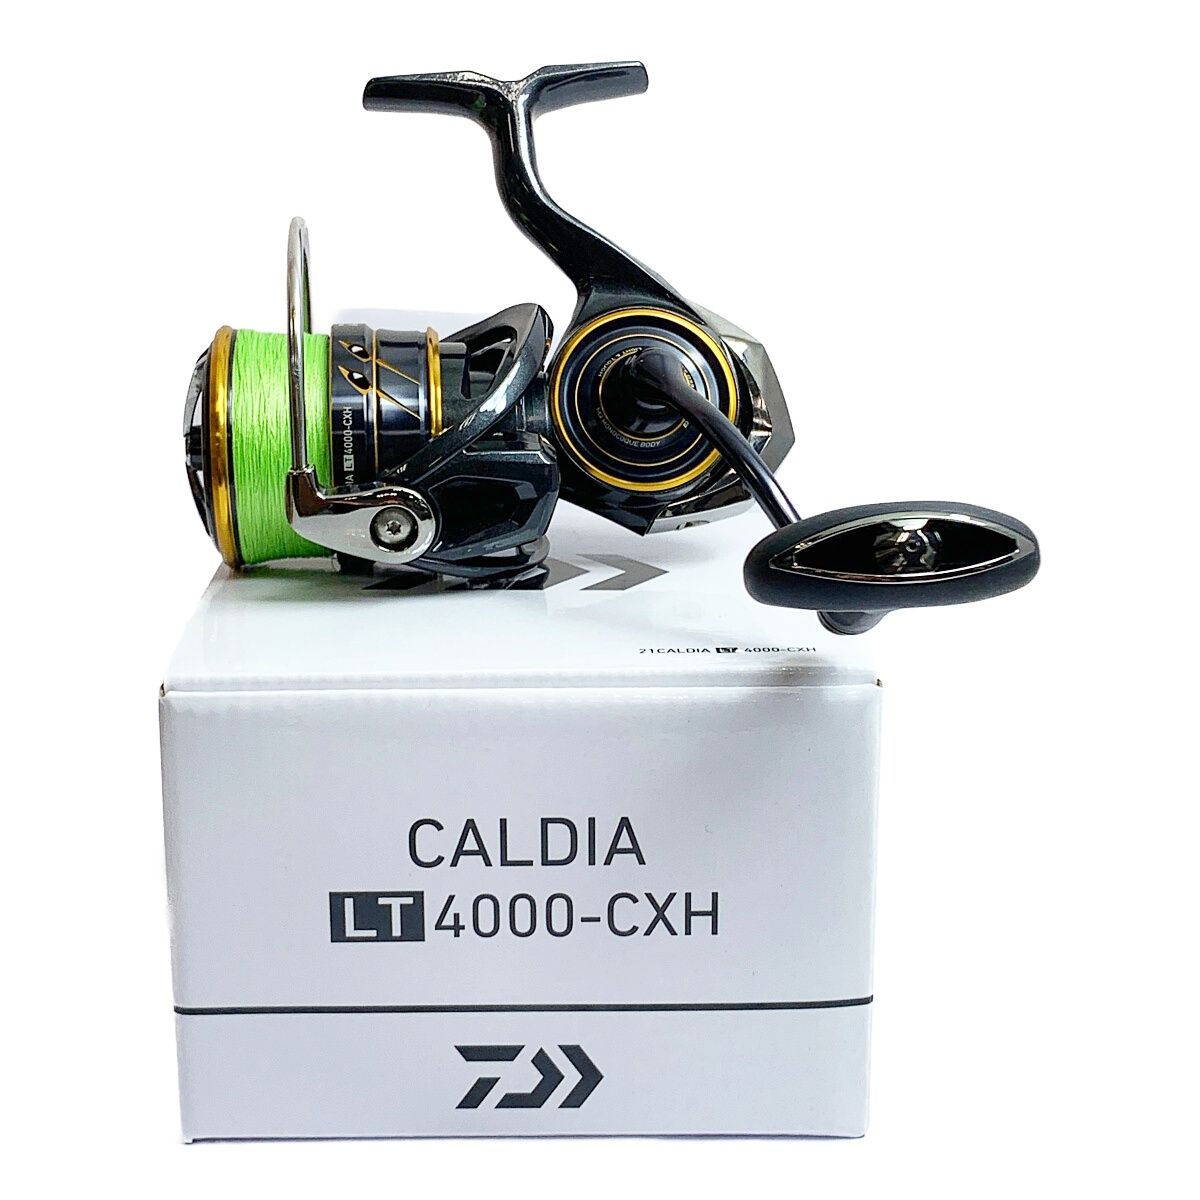 21カルディア4000-CXH-